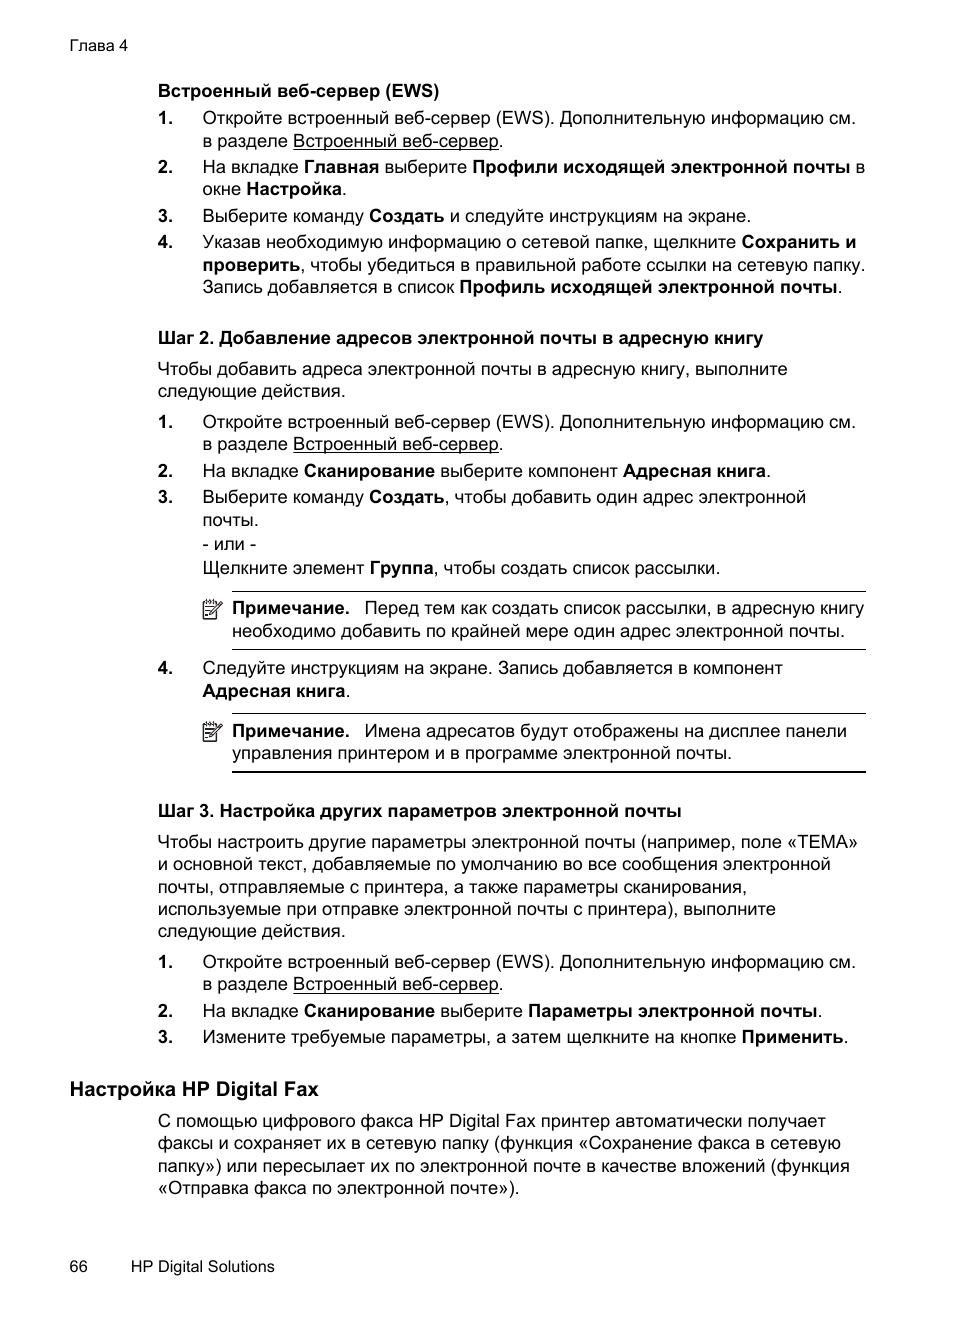 Настройка hp digital fax | Инструкция по эксплуатации HP Officejet Pro 8600 | Страница 70 / 294